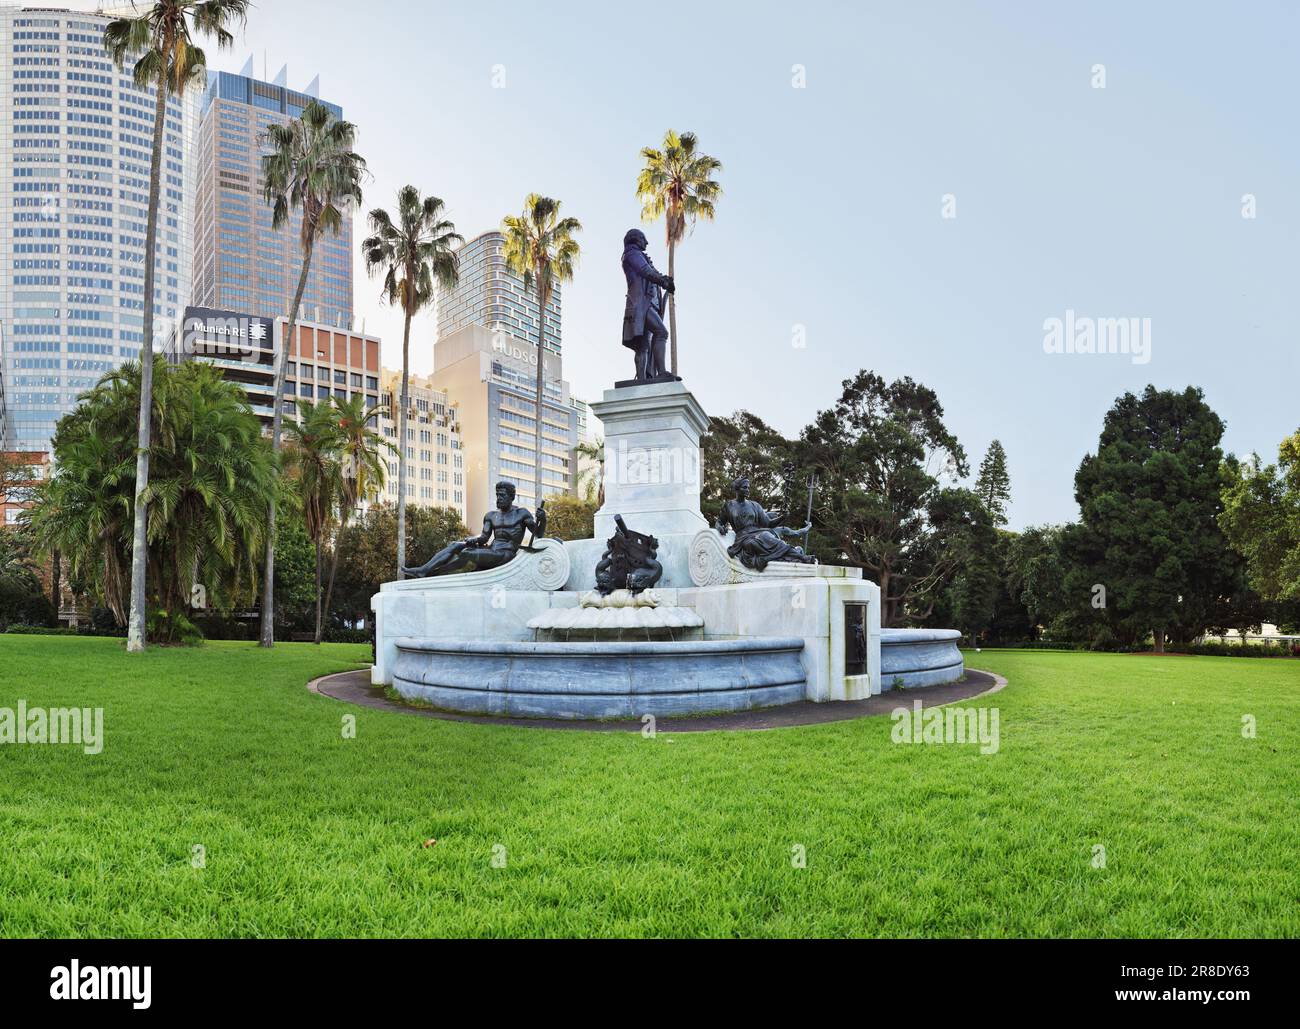 Fontaine du gouverneur Phillip, statue du capitaine Arthur Phillip, 1897, Royal Botanical Gardens, Sydney. Photographie de style GigaPan multi-images très détaillée Banque D'Images